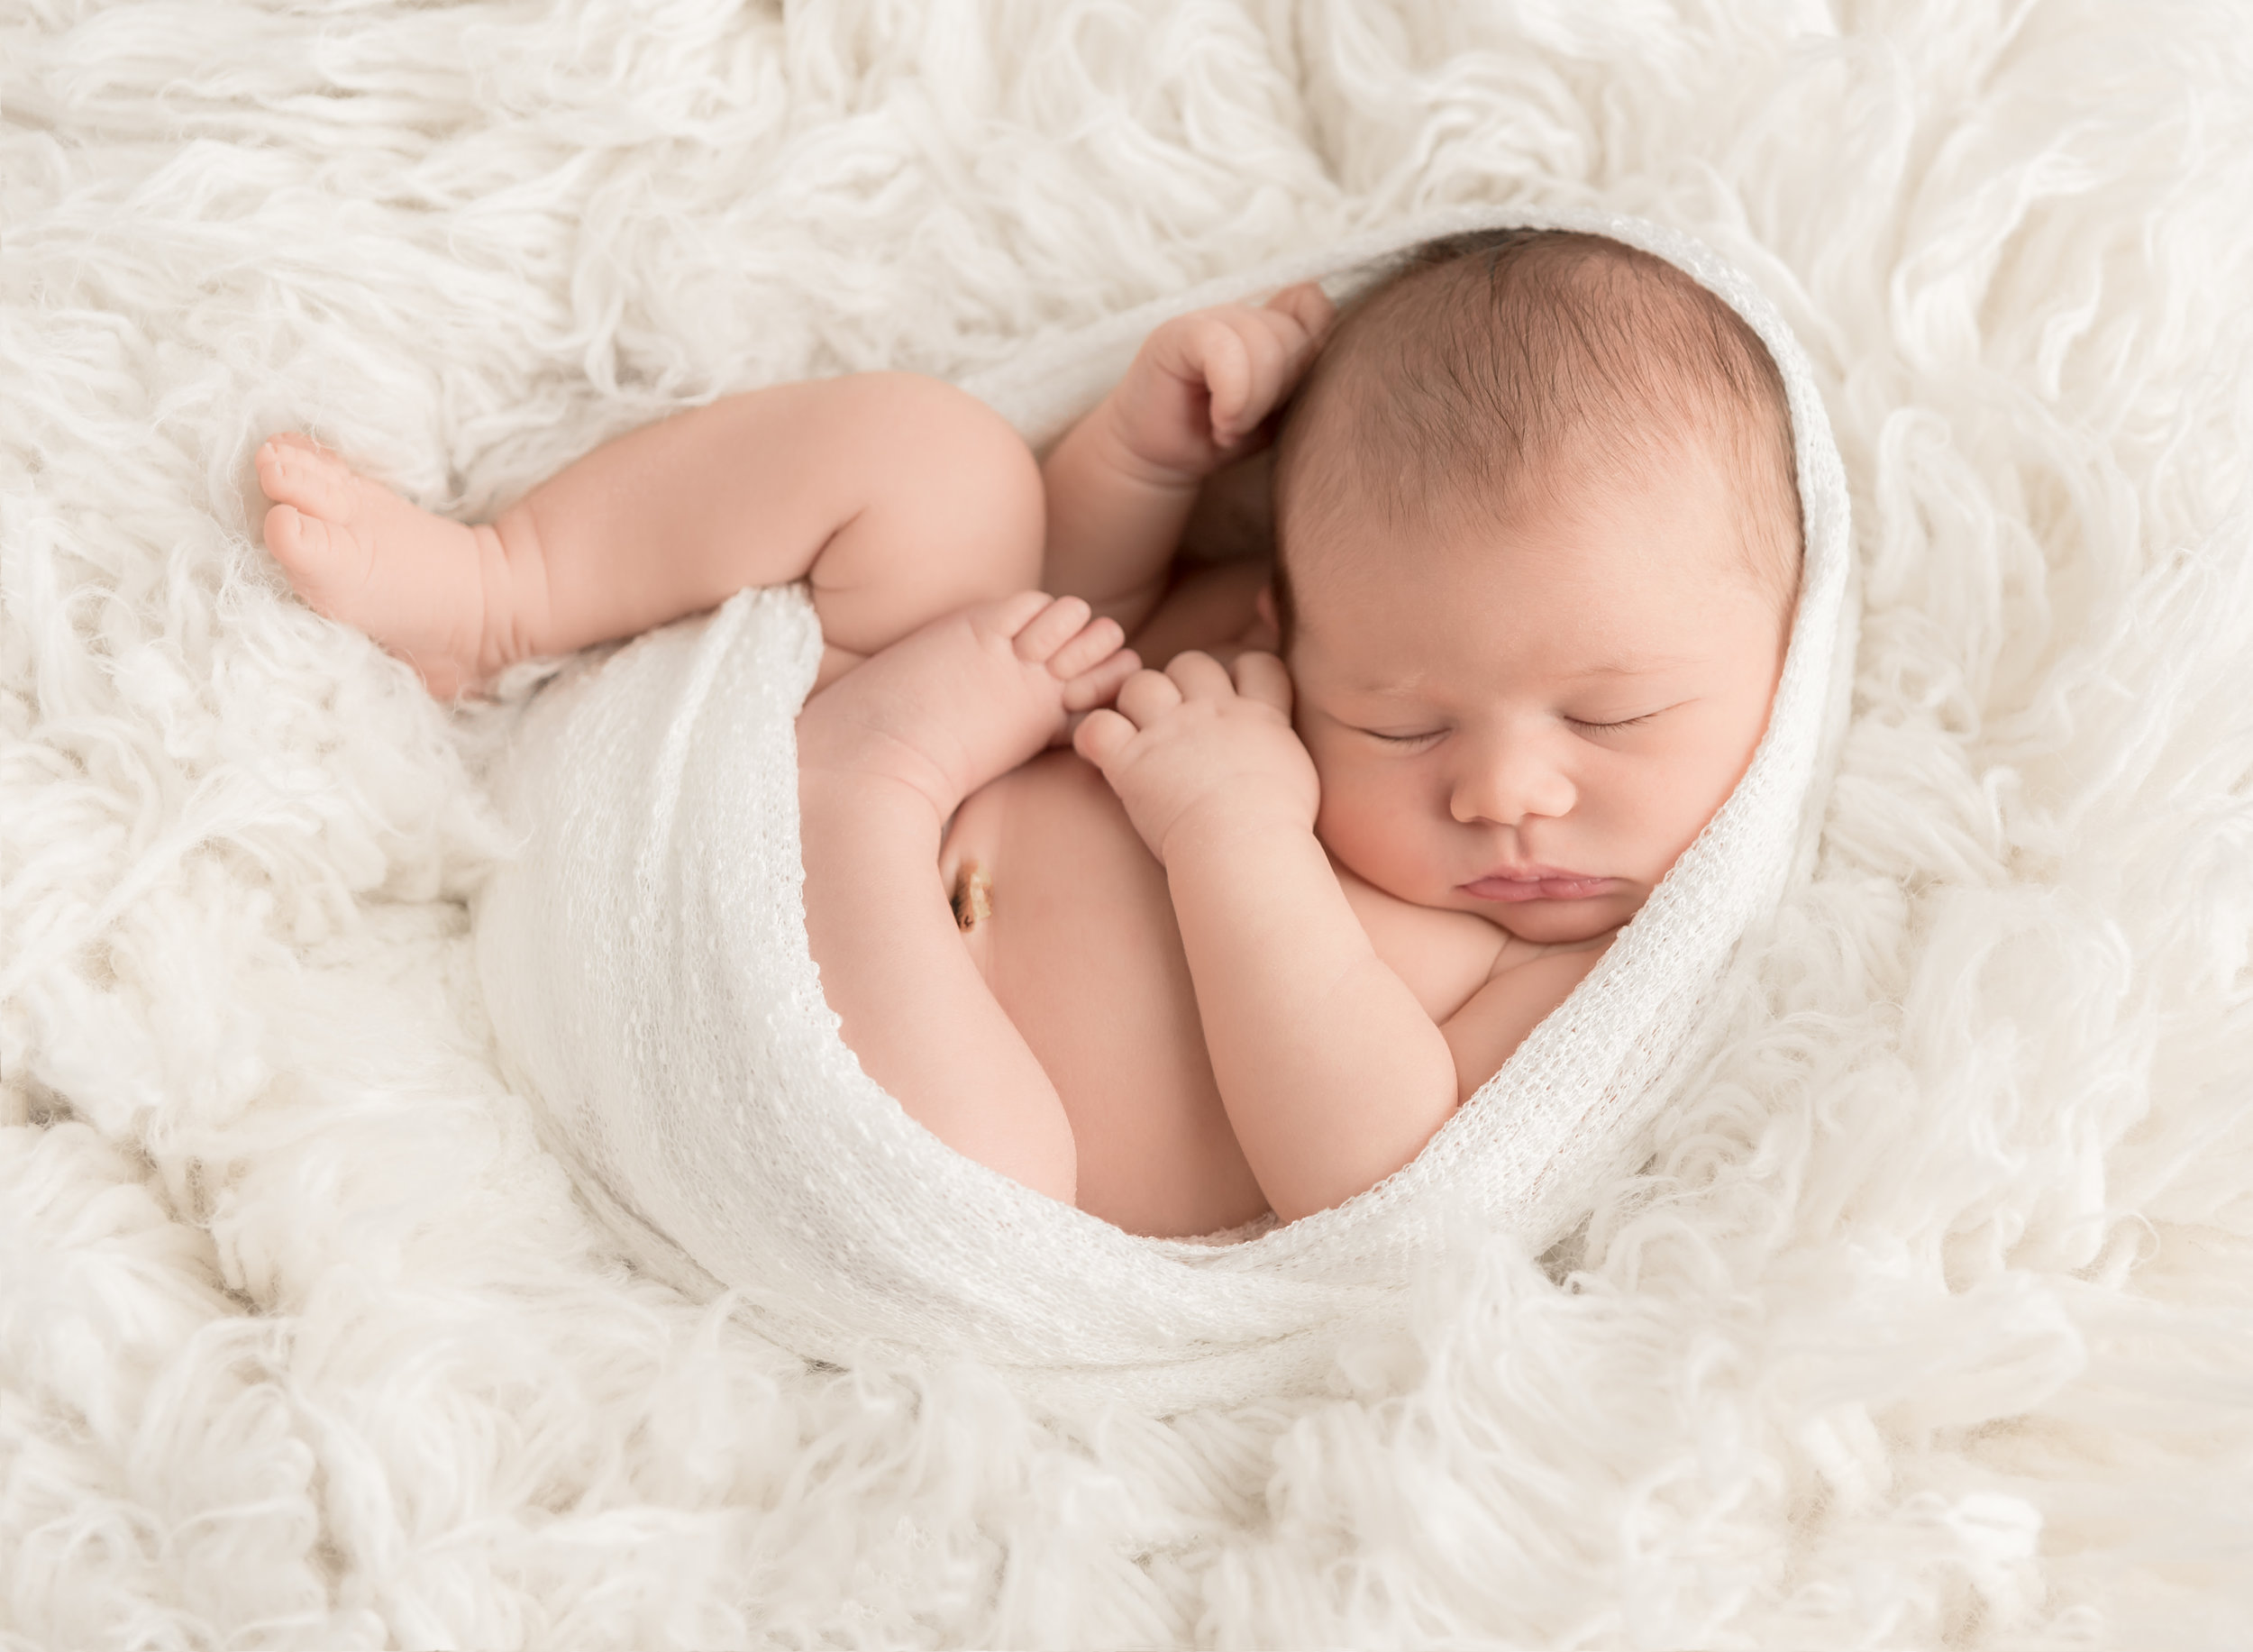 Newborn Baby Image